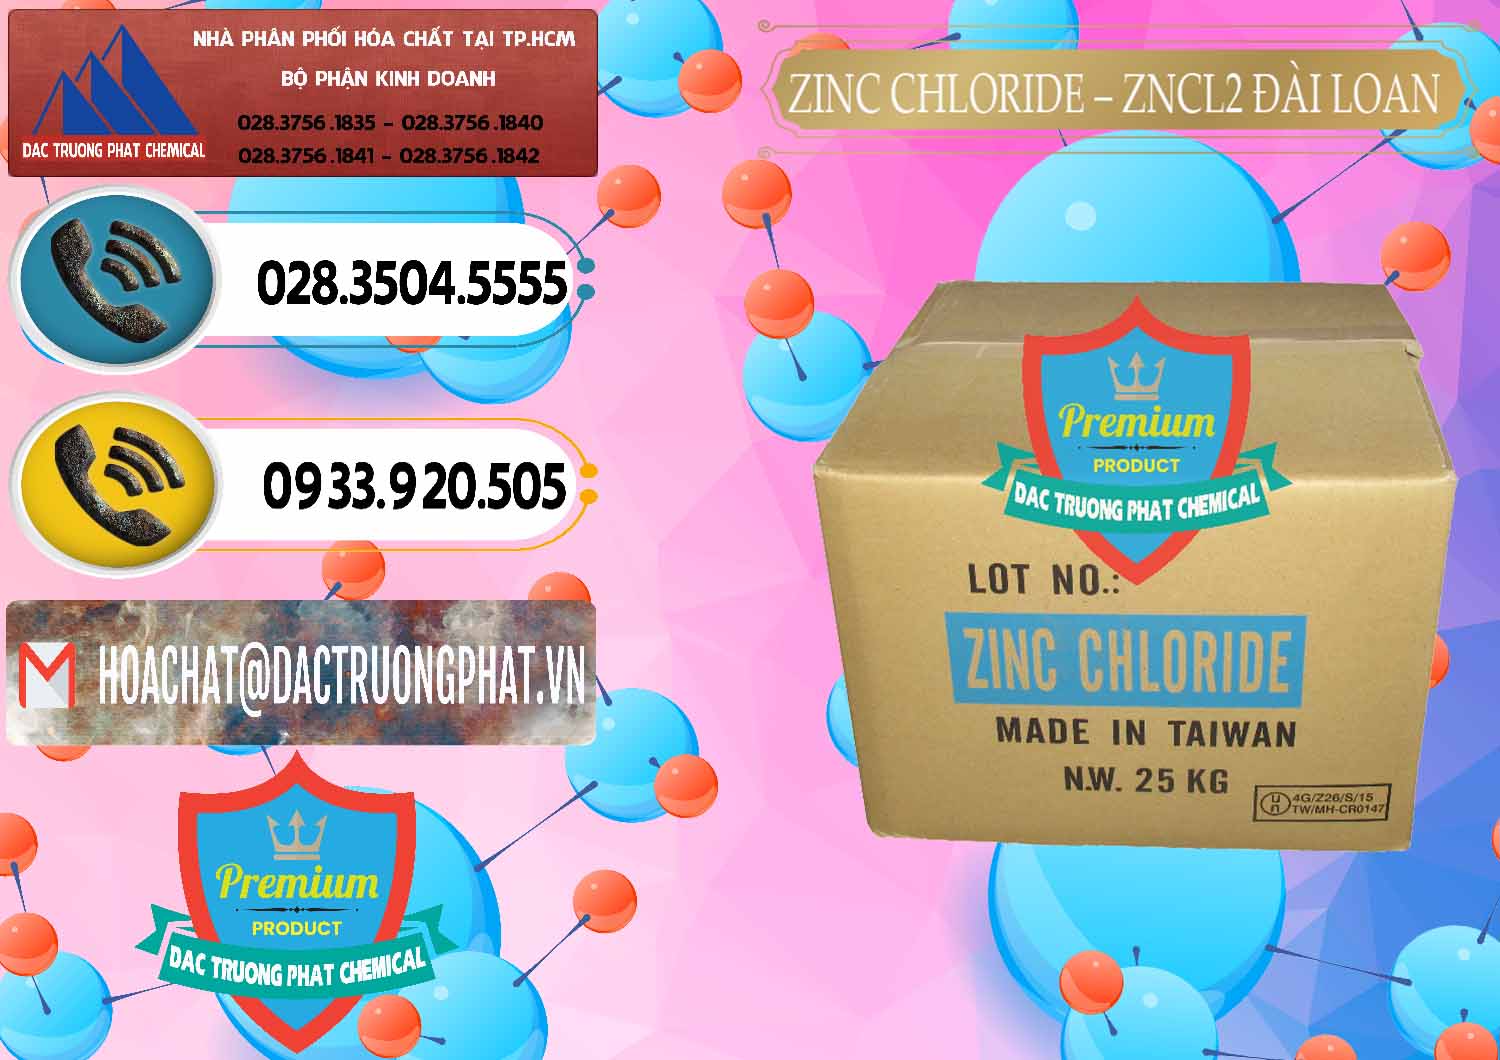 Công ty chuyên bán ( cung cấp ) Zinc Chloride - ZNCL2 96% Đài Loan Taiwan - 0178 - Chuyên phân phối _ nhập khẩu hóa chất tại TP.HCM - hoachatdetnhuom.vn